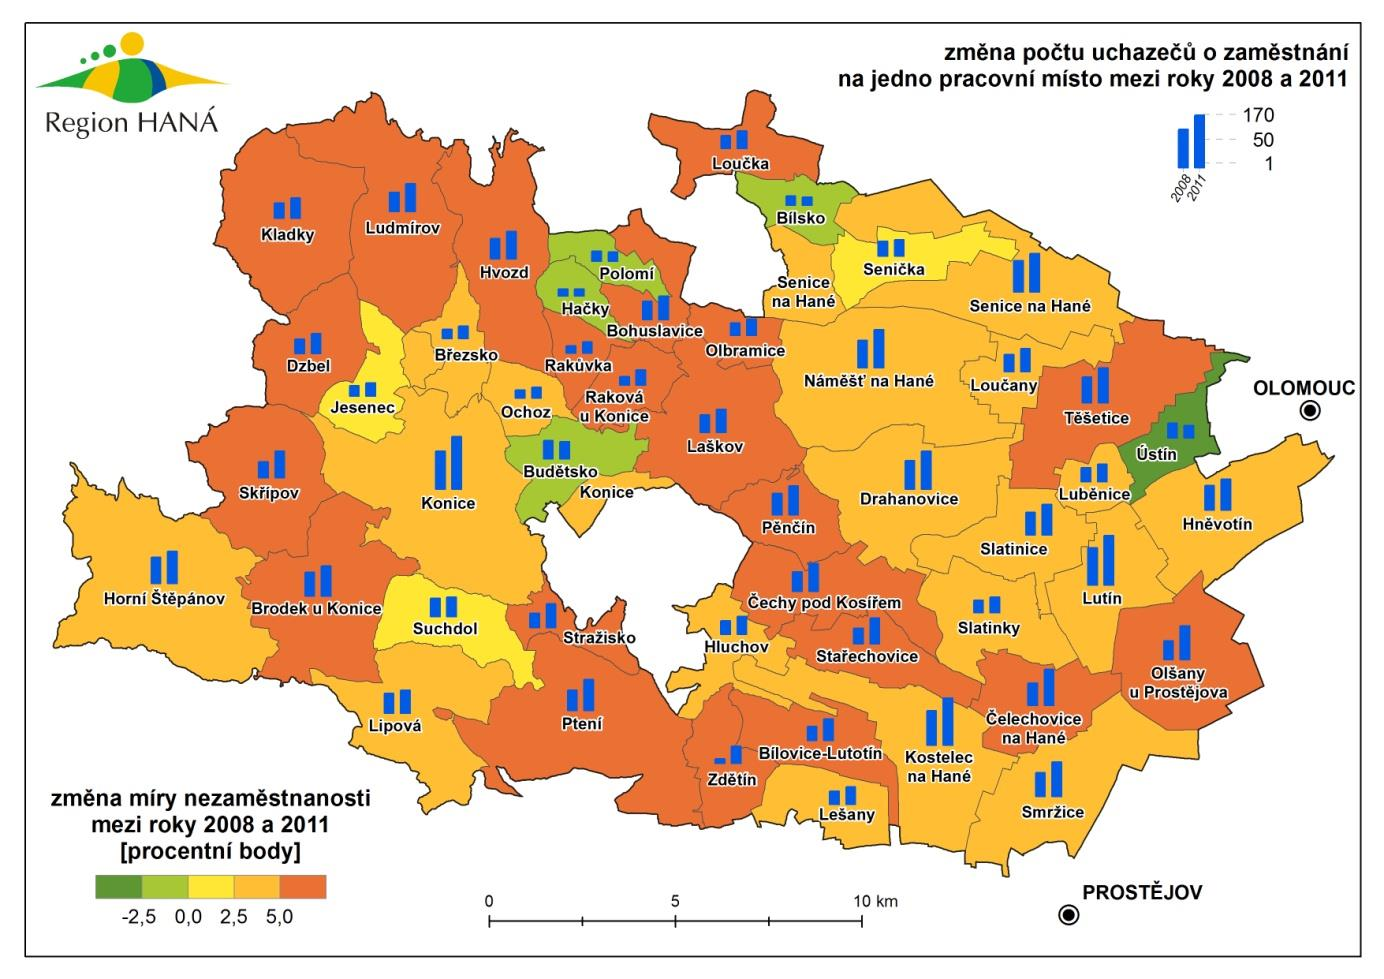 MAS Region HANÁ 40 237 27 146 1 438 216 5,54 ANALYTICKÁ ČÁST Zdroj: portal.mpsv.cz V Regionu HANÁ žije celkem 40 237 obyvatel, z toho ekonomicky aktivních je 27 146 obyvatel, tj. 67,5%.